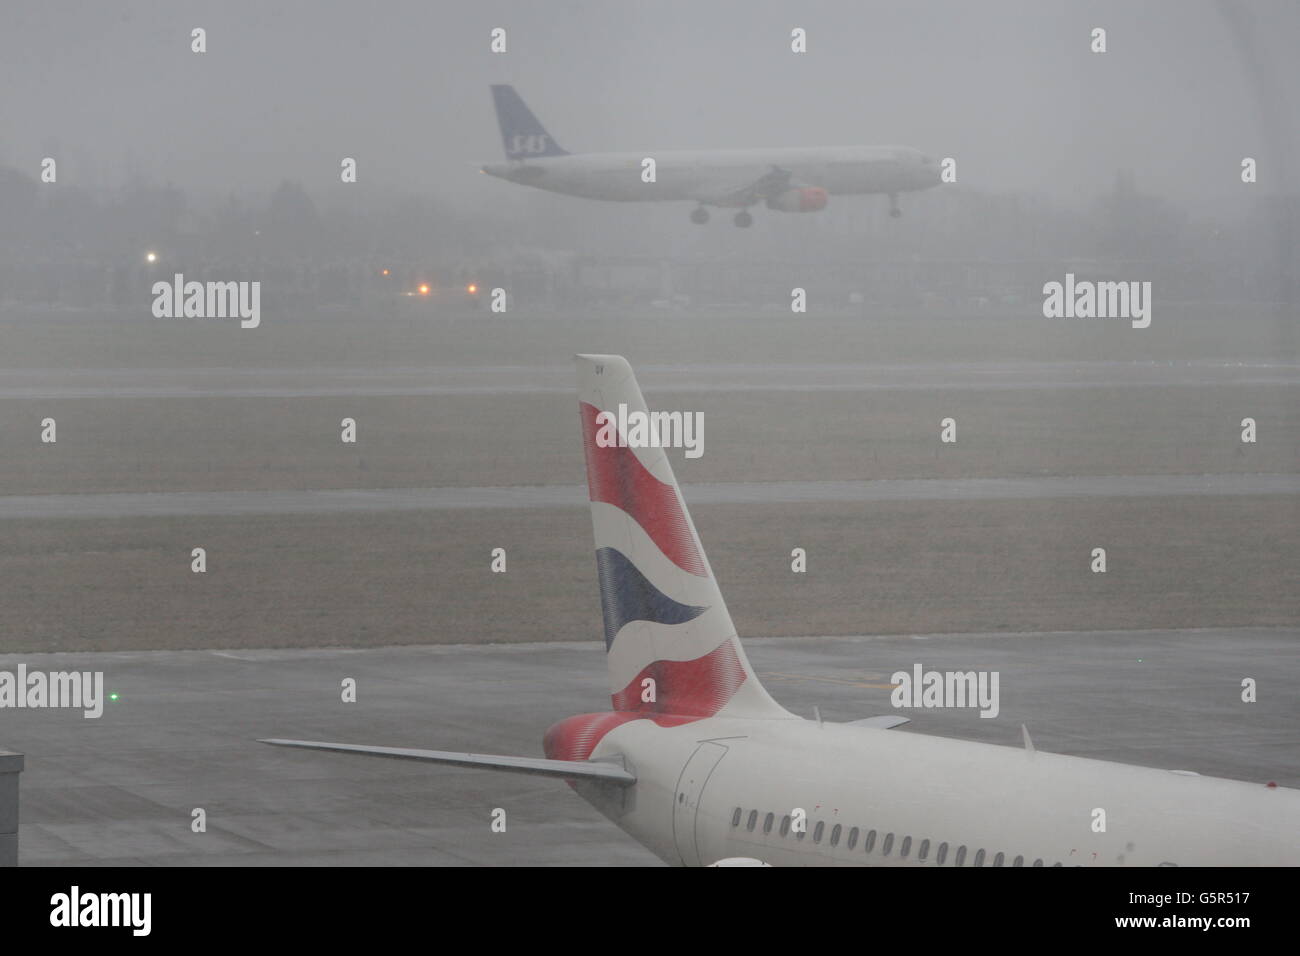 Ein Flugzeug landet am Flughafen Heathrow, da die Prognose nahelegt, dass später heute Schnee in London ankommen wird, nachdem die Straßen durch Schnee geschlossen und die Zugverbindungen in anderen Teilen Großbritanniens unterbrochen wurden. Aber die wichtigsten Pendlergürtelgebiete Südenglands entkamen den schlimmsten Gefahren am Morgen. Stockfoto